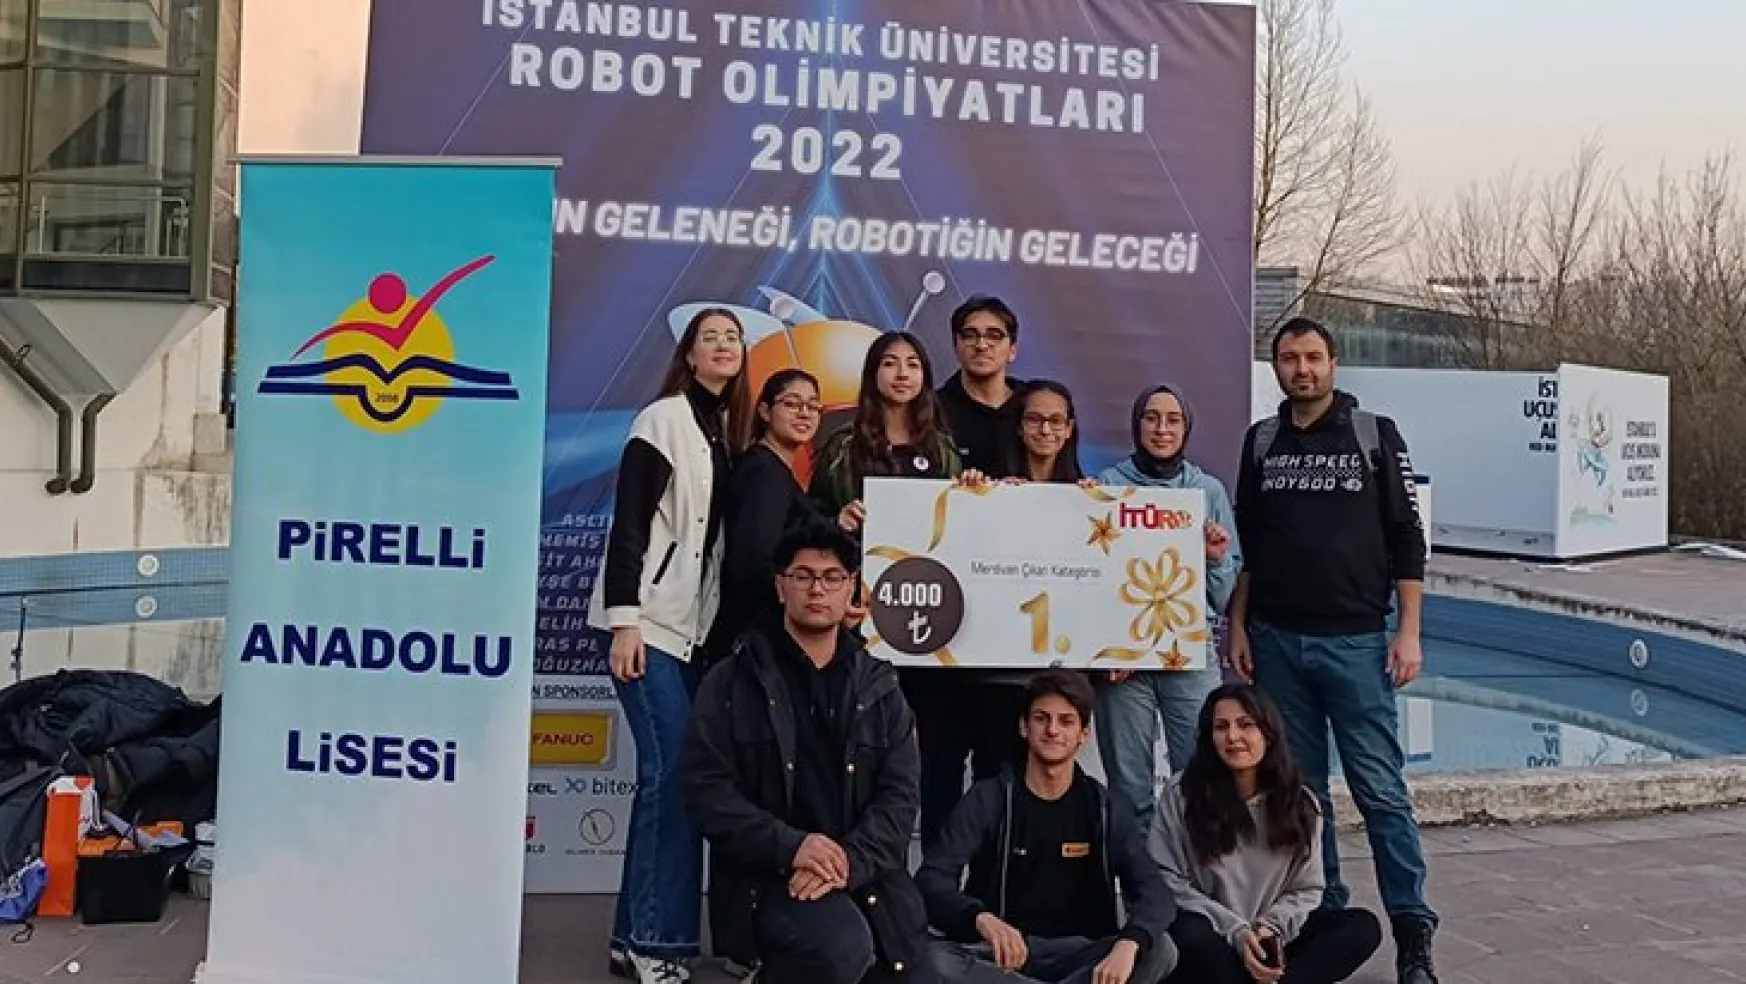 İTÜ Robot Olimpiyatları'nda ilimize 1'incilik ödülü